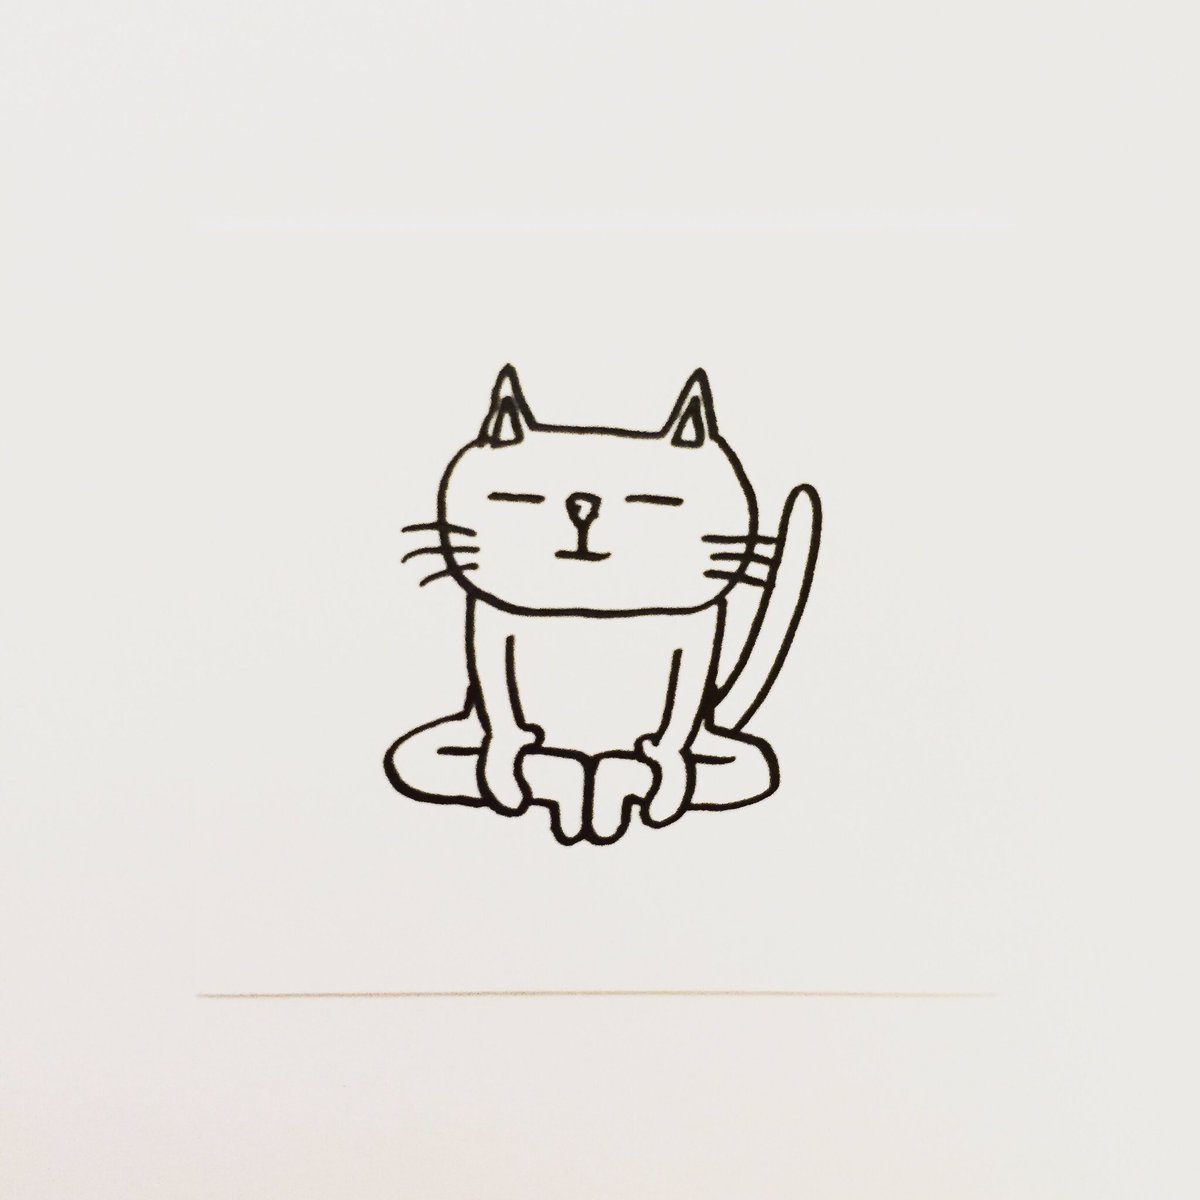 肌子 در توییتر 今日のイラストはコレ ｪ ヨガの合蹠 がっせき のポーズをしている猫 イラスト 猫 ネコ ねこ オリジナル ペン画 アナログ画 絵 猫の絵 白黒猫 しろねこ